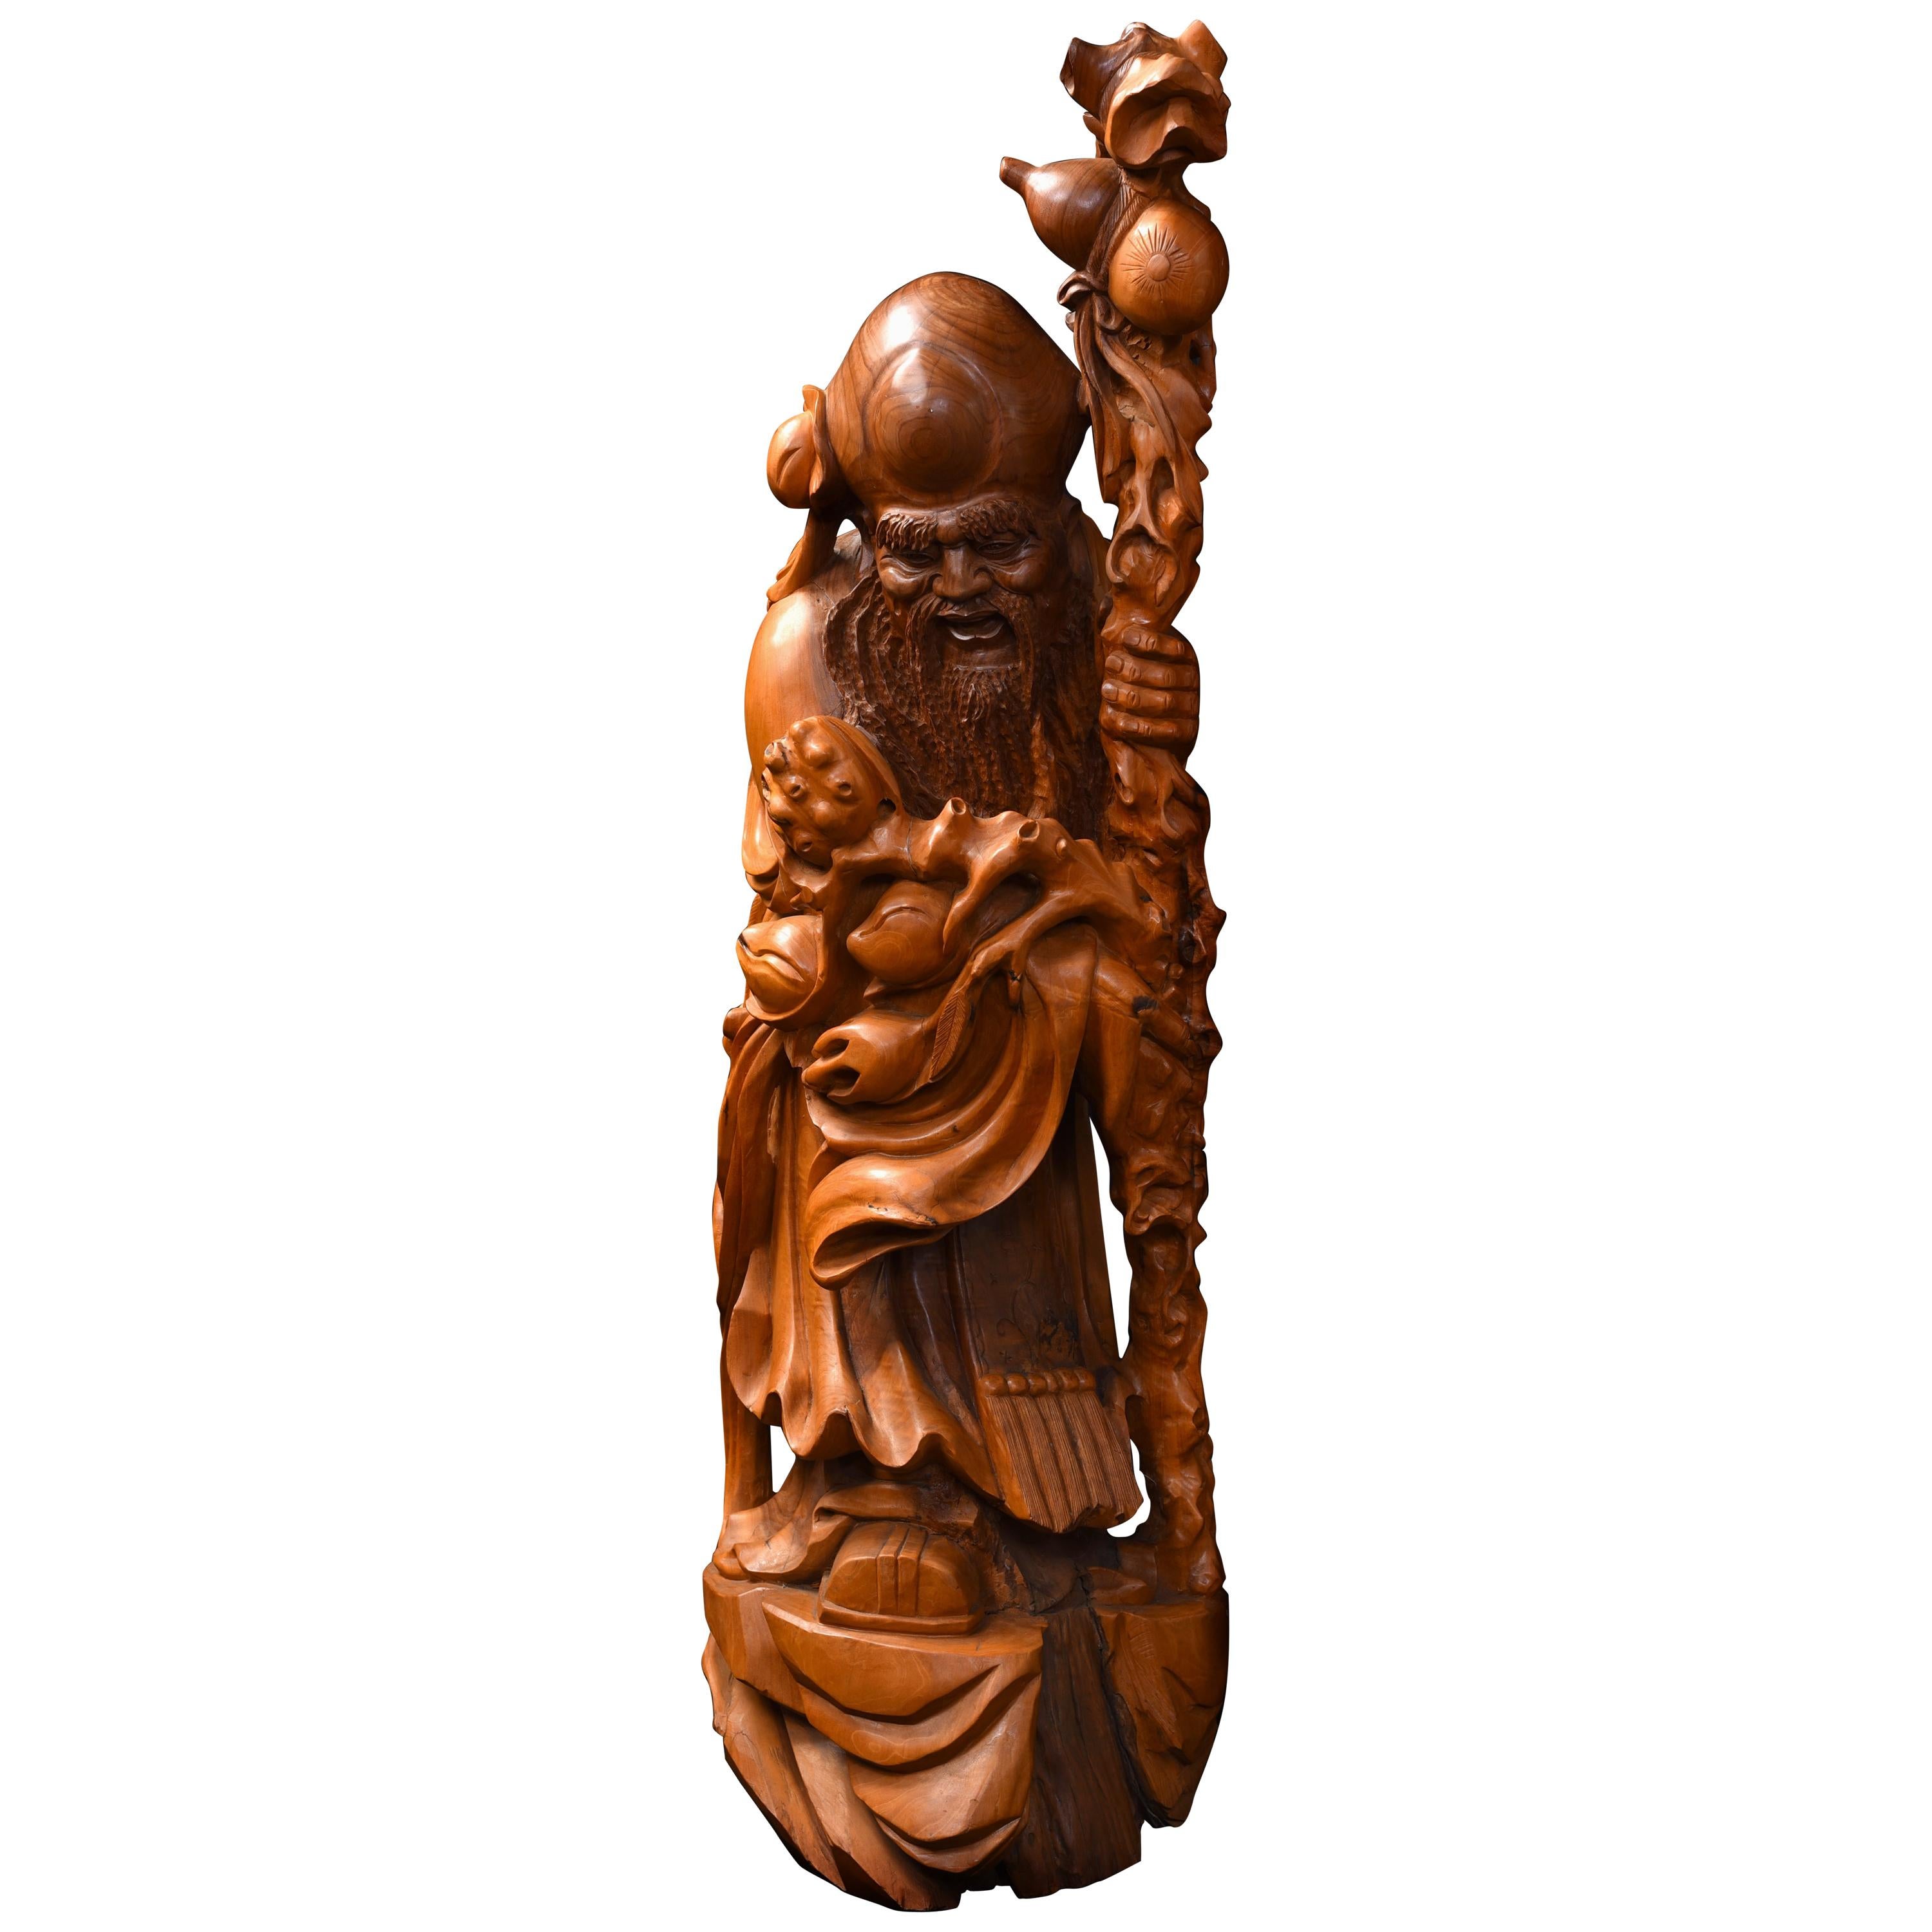 Große chinesische geschnitzte Skulptur des Shou Xing, Gott der Weisheit und Langlebigkeit